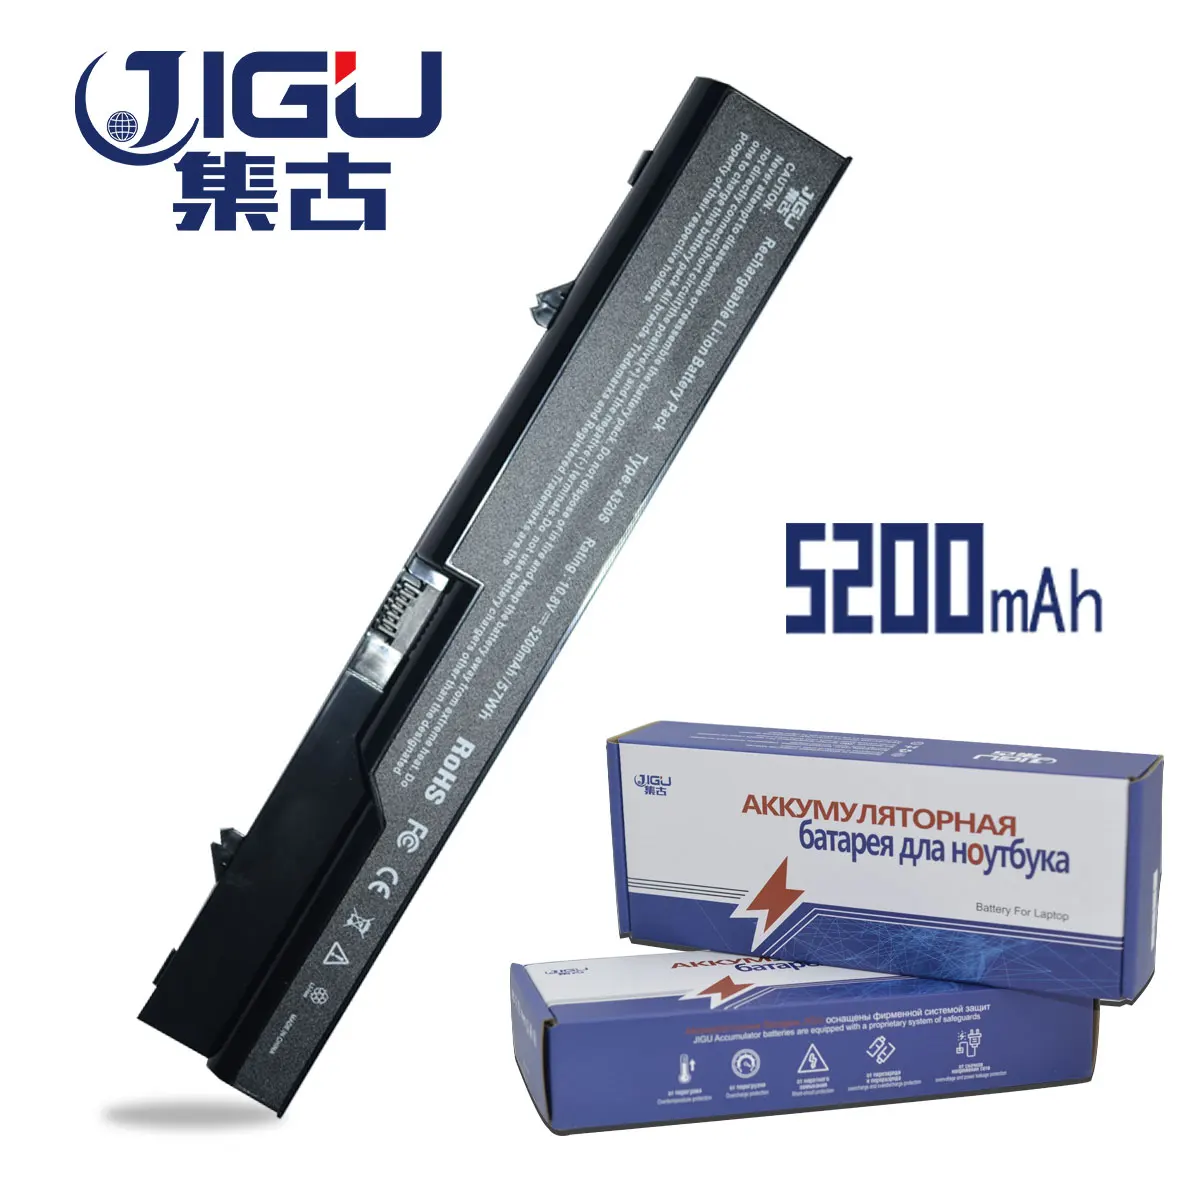 JIGU Portátil Batería Para Compaq BQ350AA HSTNN-Q78C HSTNN-W80C HSTNN-Q81C-3 HSTNN-Q81C-4 HSTNN-UB1A HSTNN-W79C-7 para hp 4520s 625 3